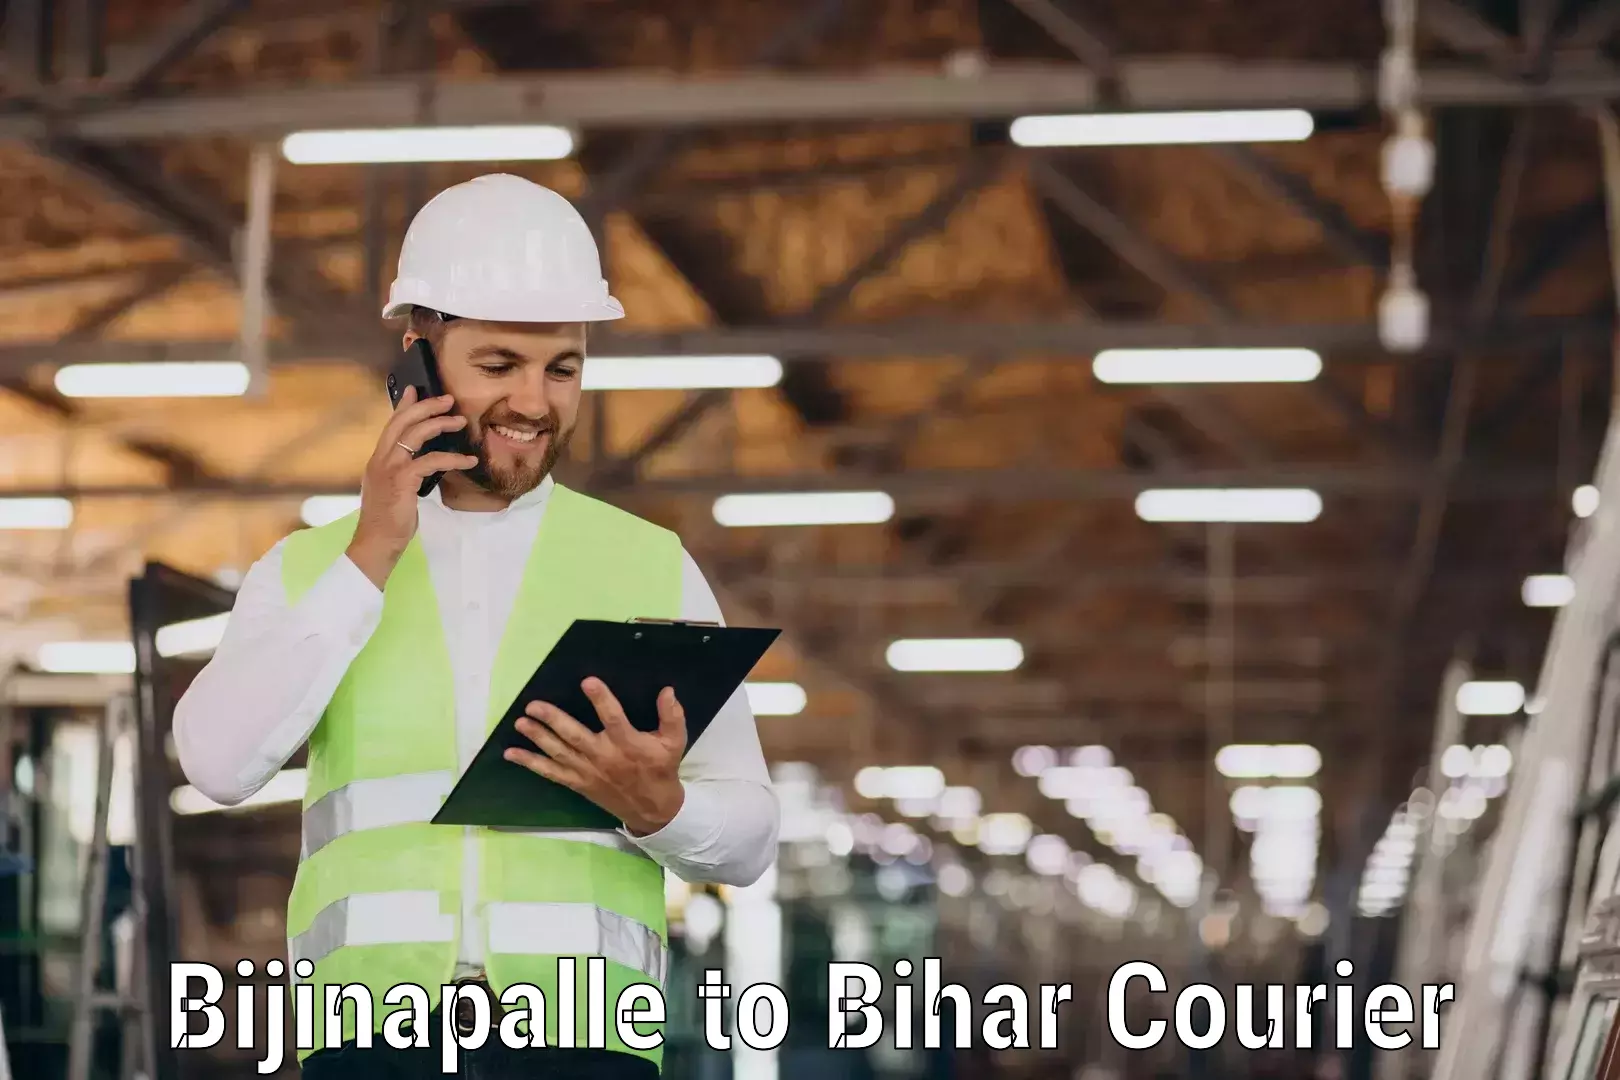 Reliable courier service Bijinapalle to Mahnar Bazar